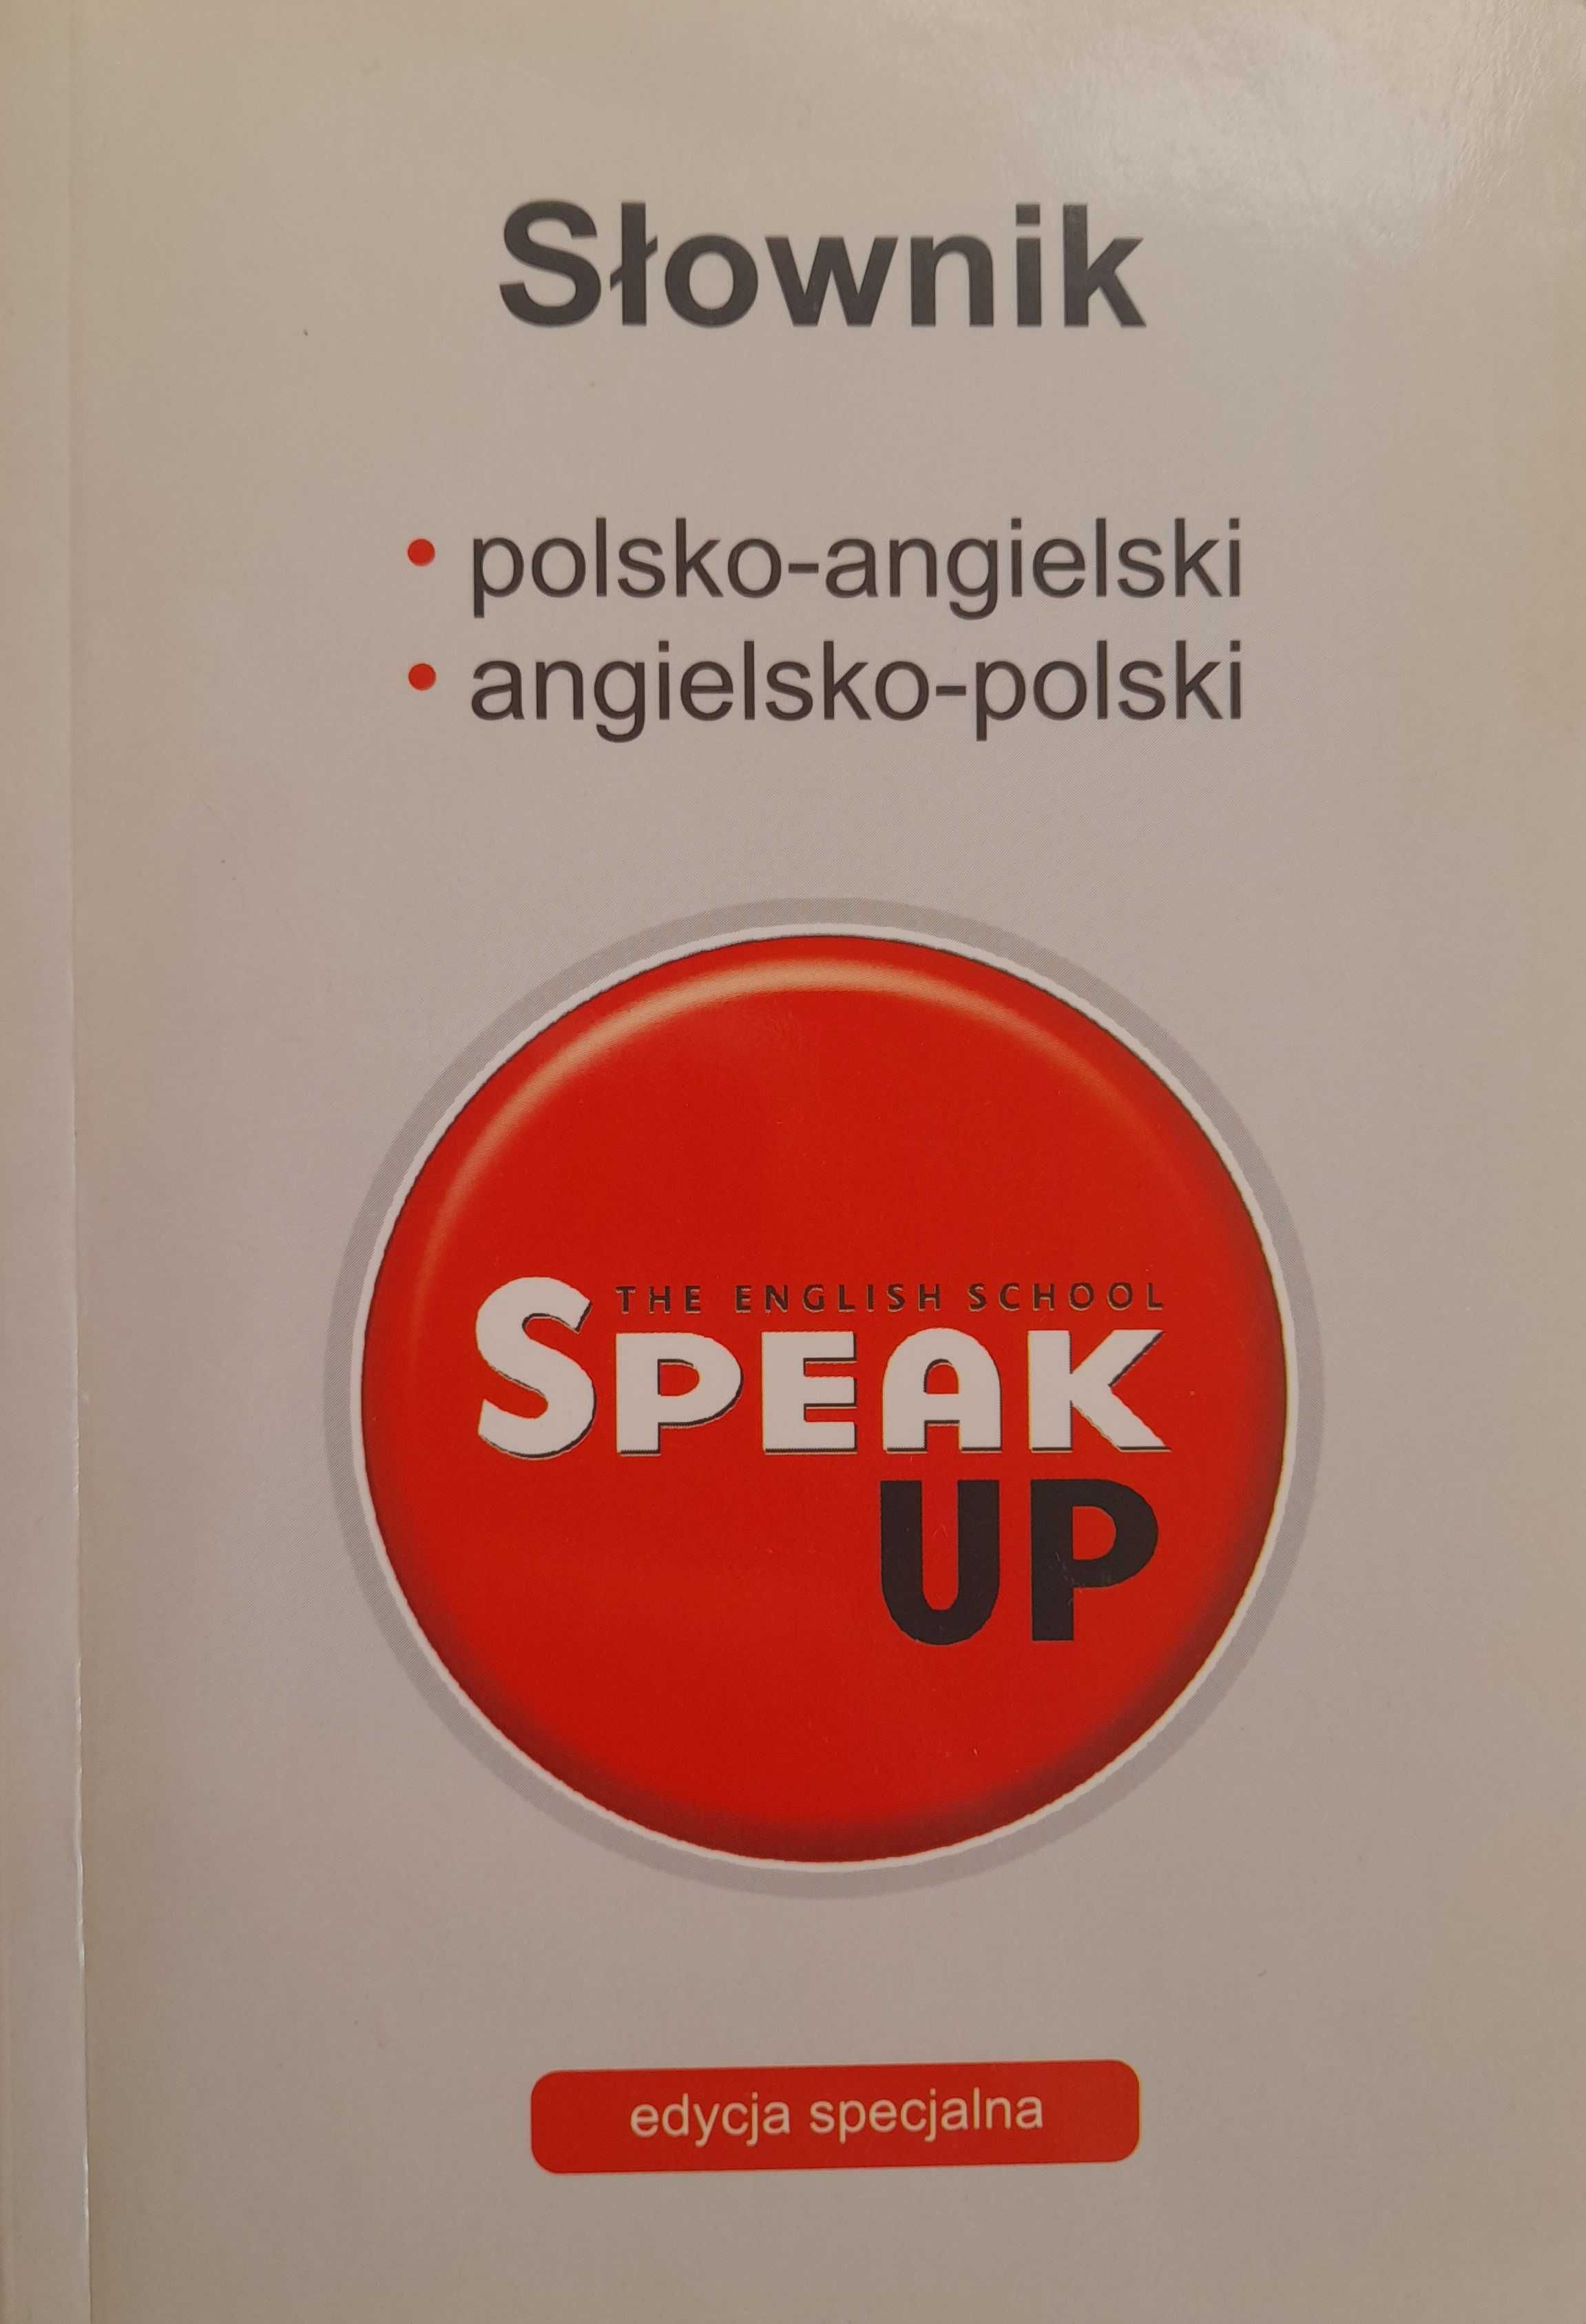 Słownik polsko-angielski angielsko-polski SPEAK UP